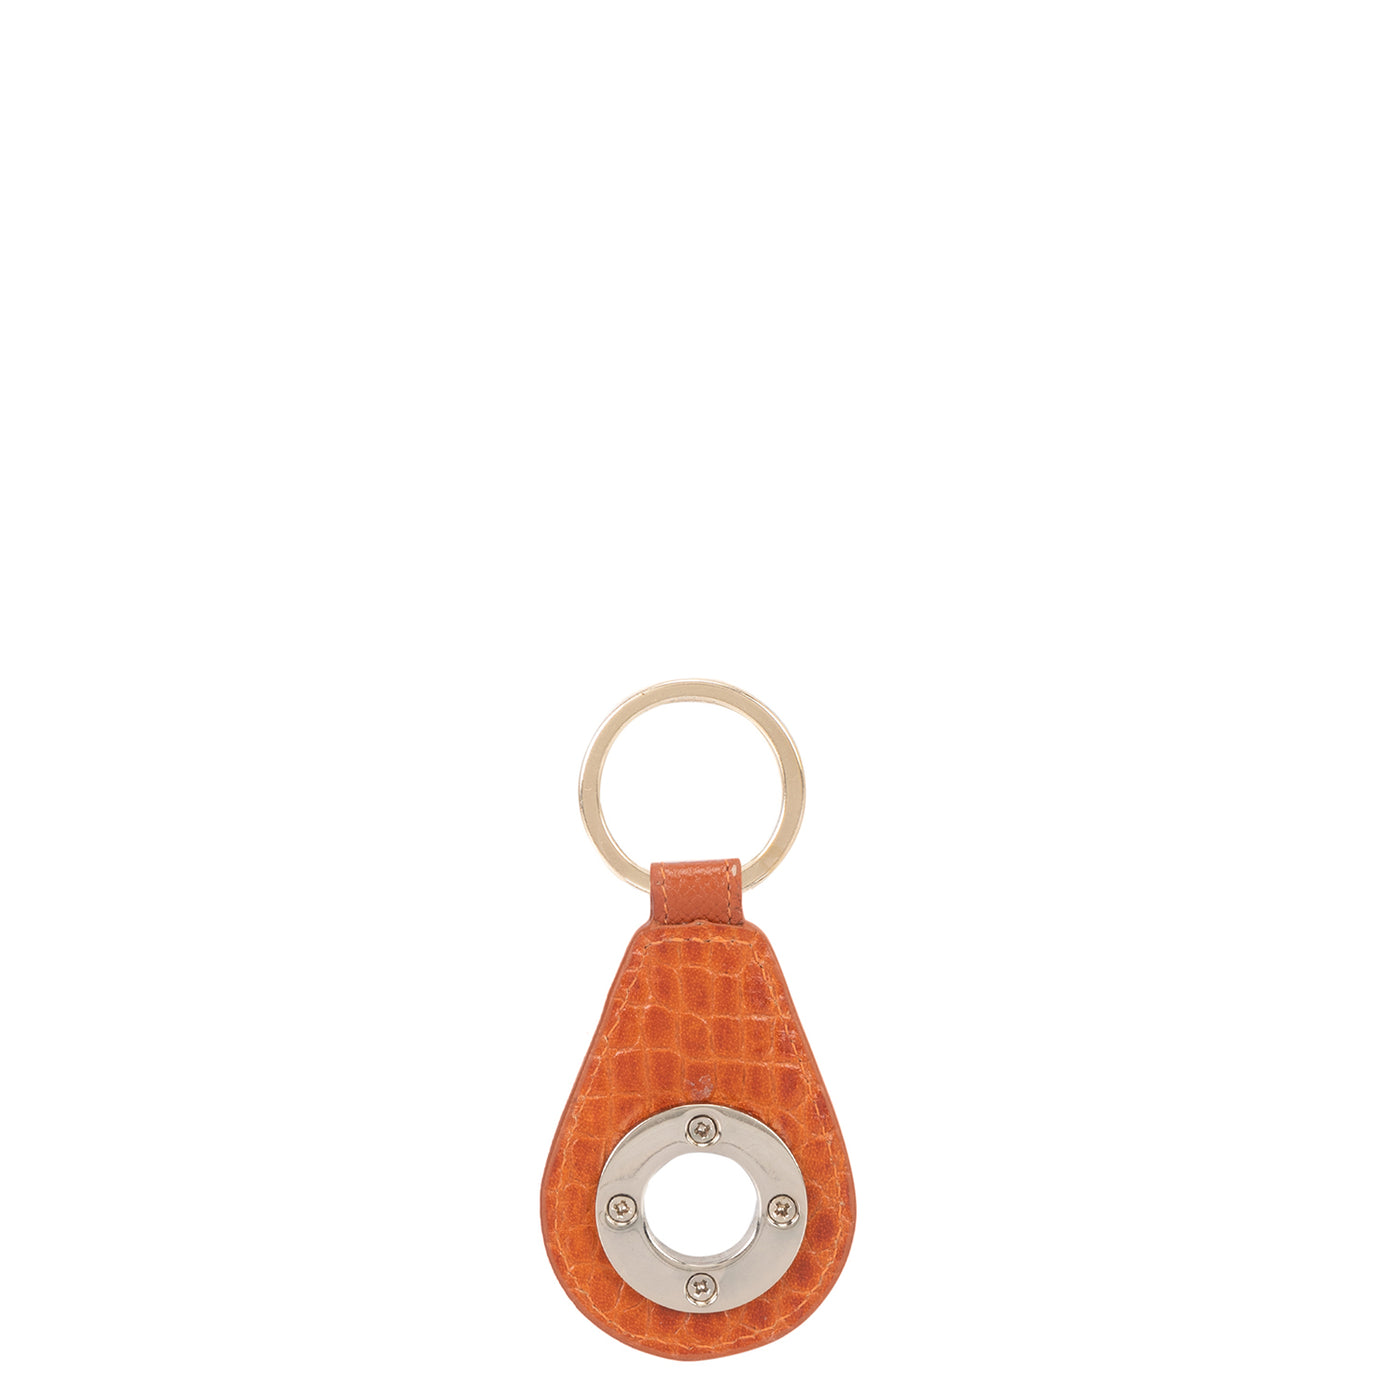 Croco Leather Key Chain - Orange